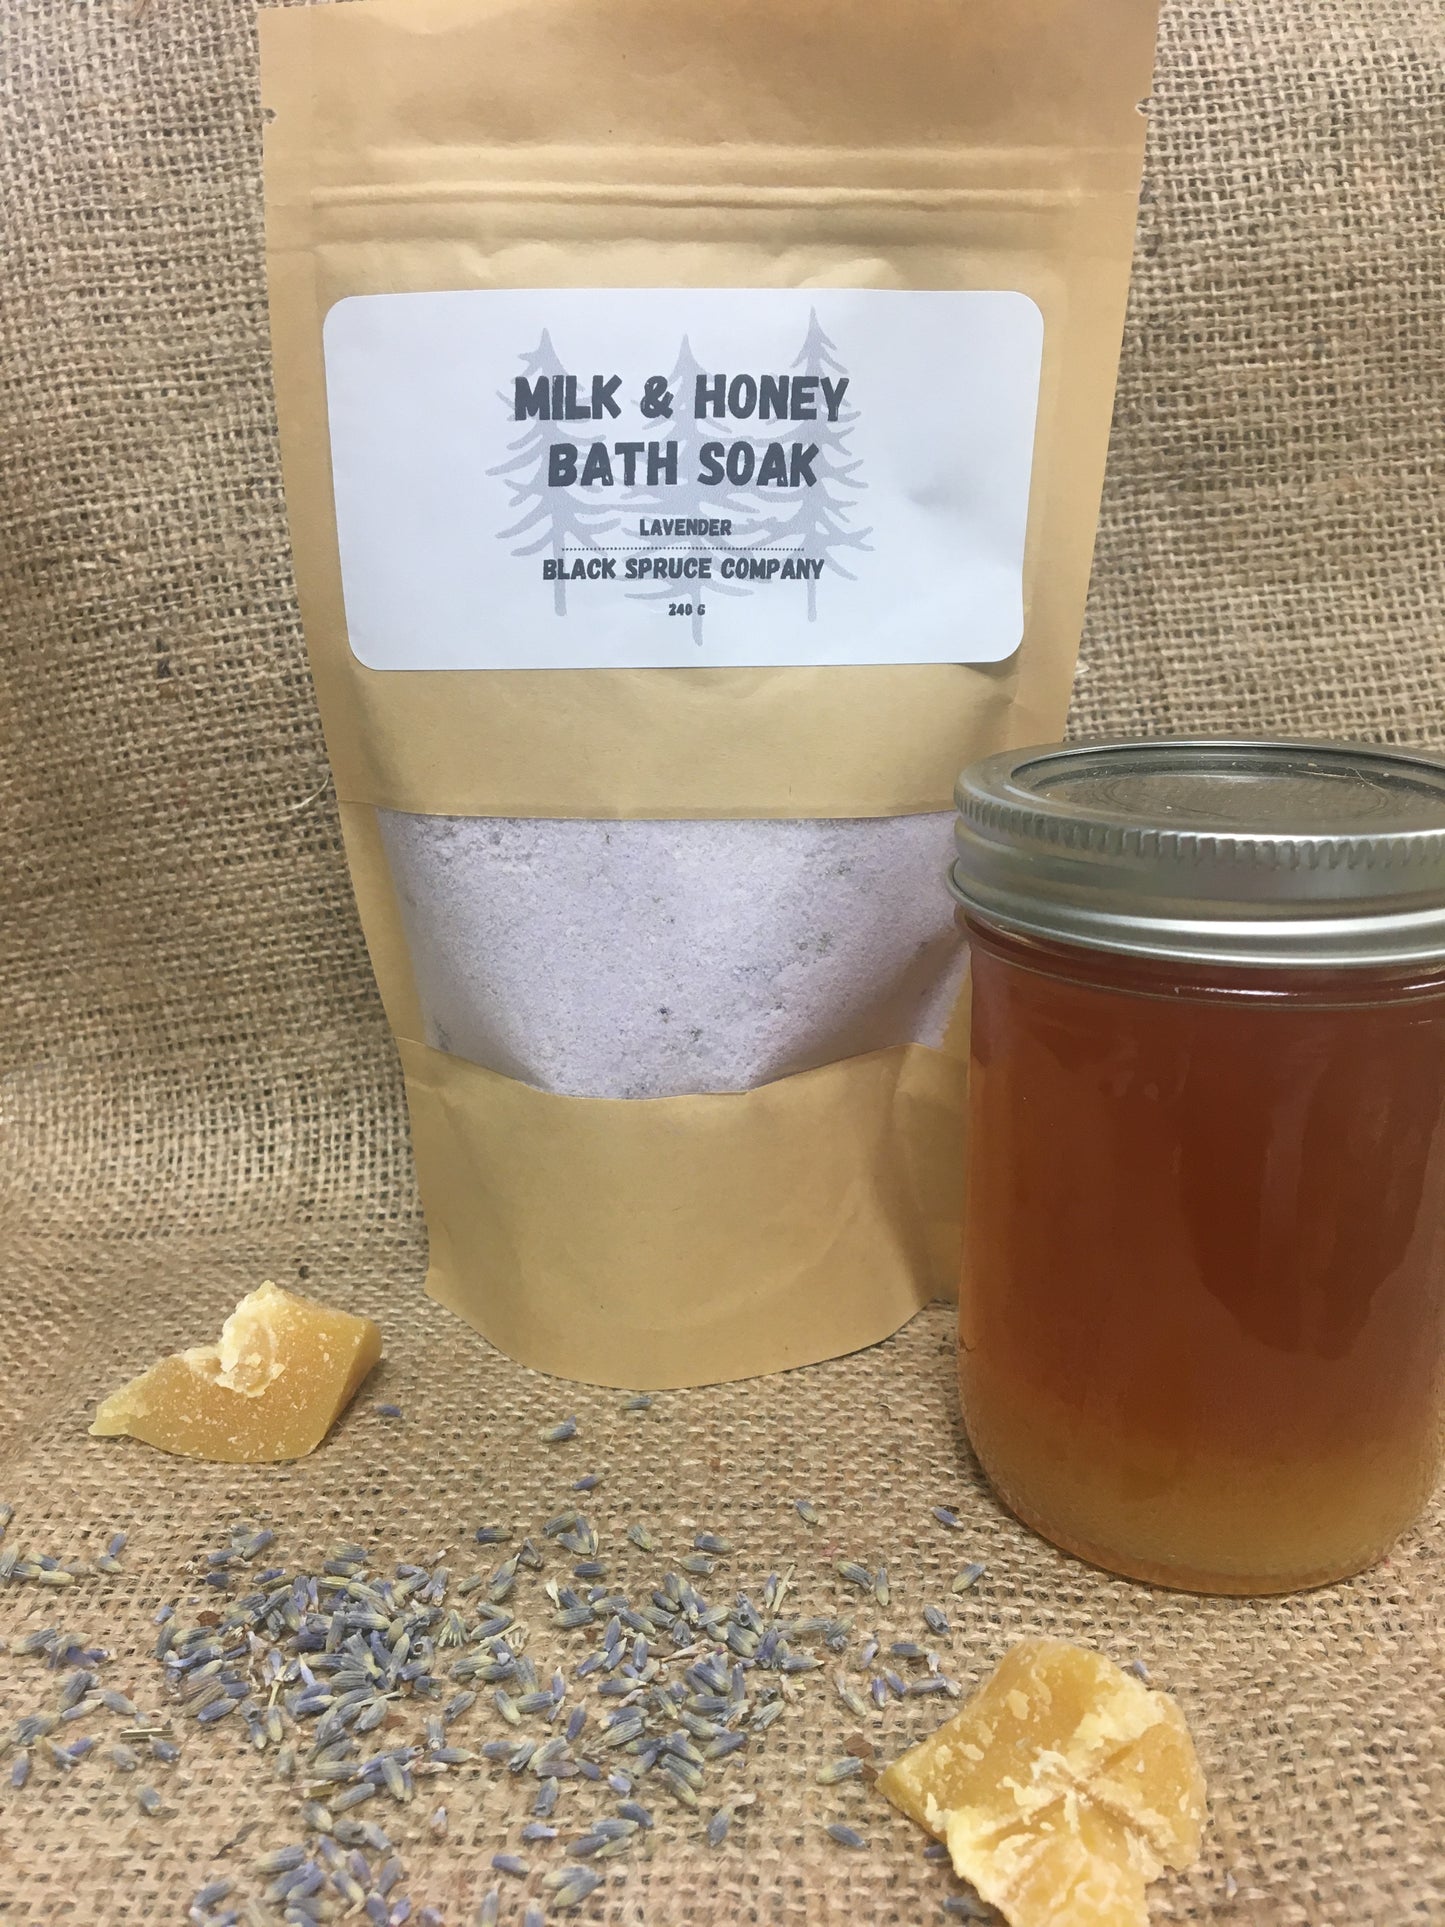 Milk and Honey Bath Soak - Lavender in bag